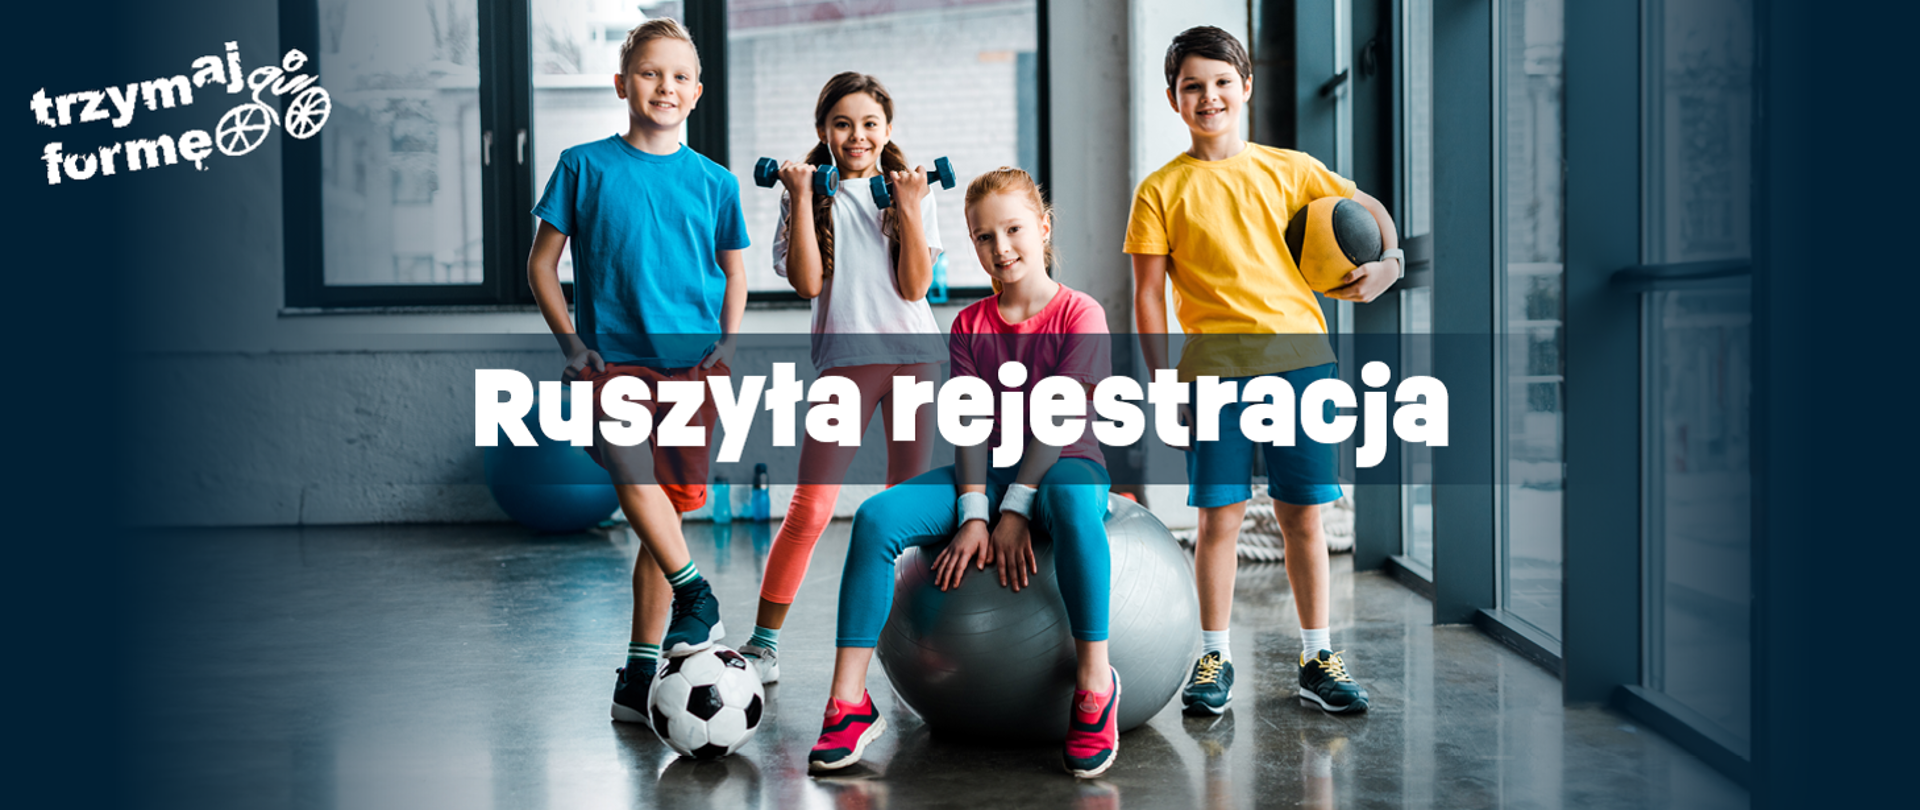 Czworo dzieci w strojach sportowych trzyma piłki, siedzi na dużej gumowej piłce, trzyma hantelki i uśmiechem zachęca do ćwiczeń. Napis ruszyła rejestracja, trzymaj formę.